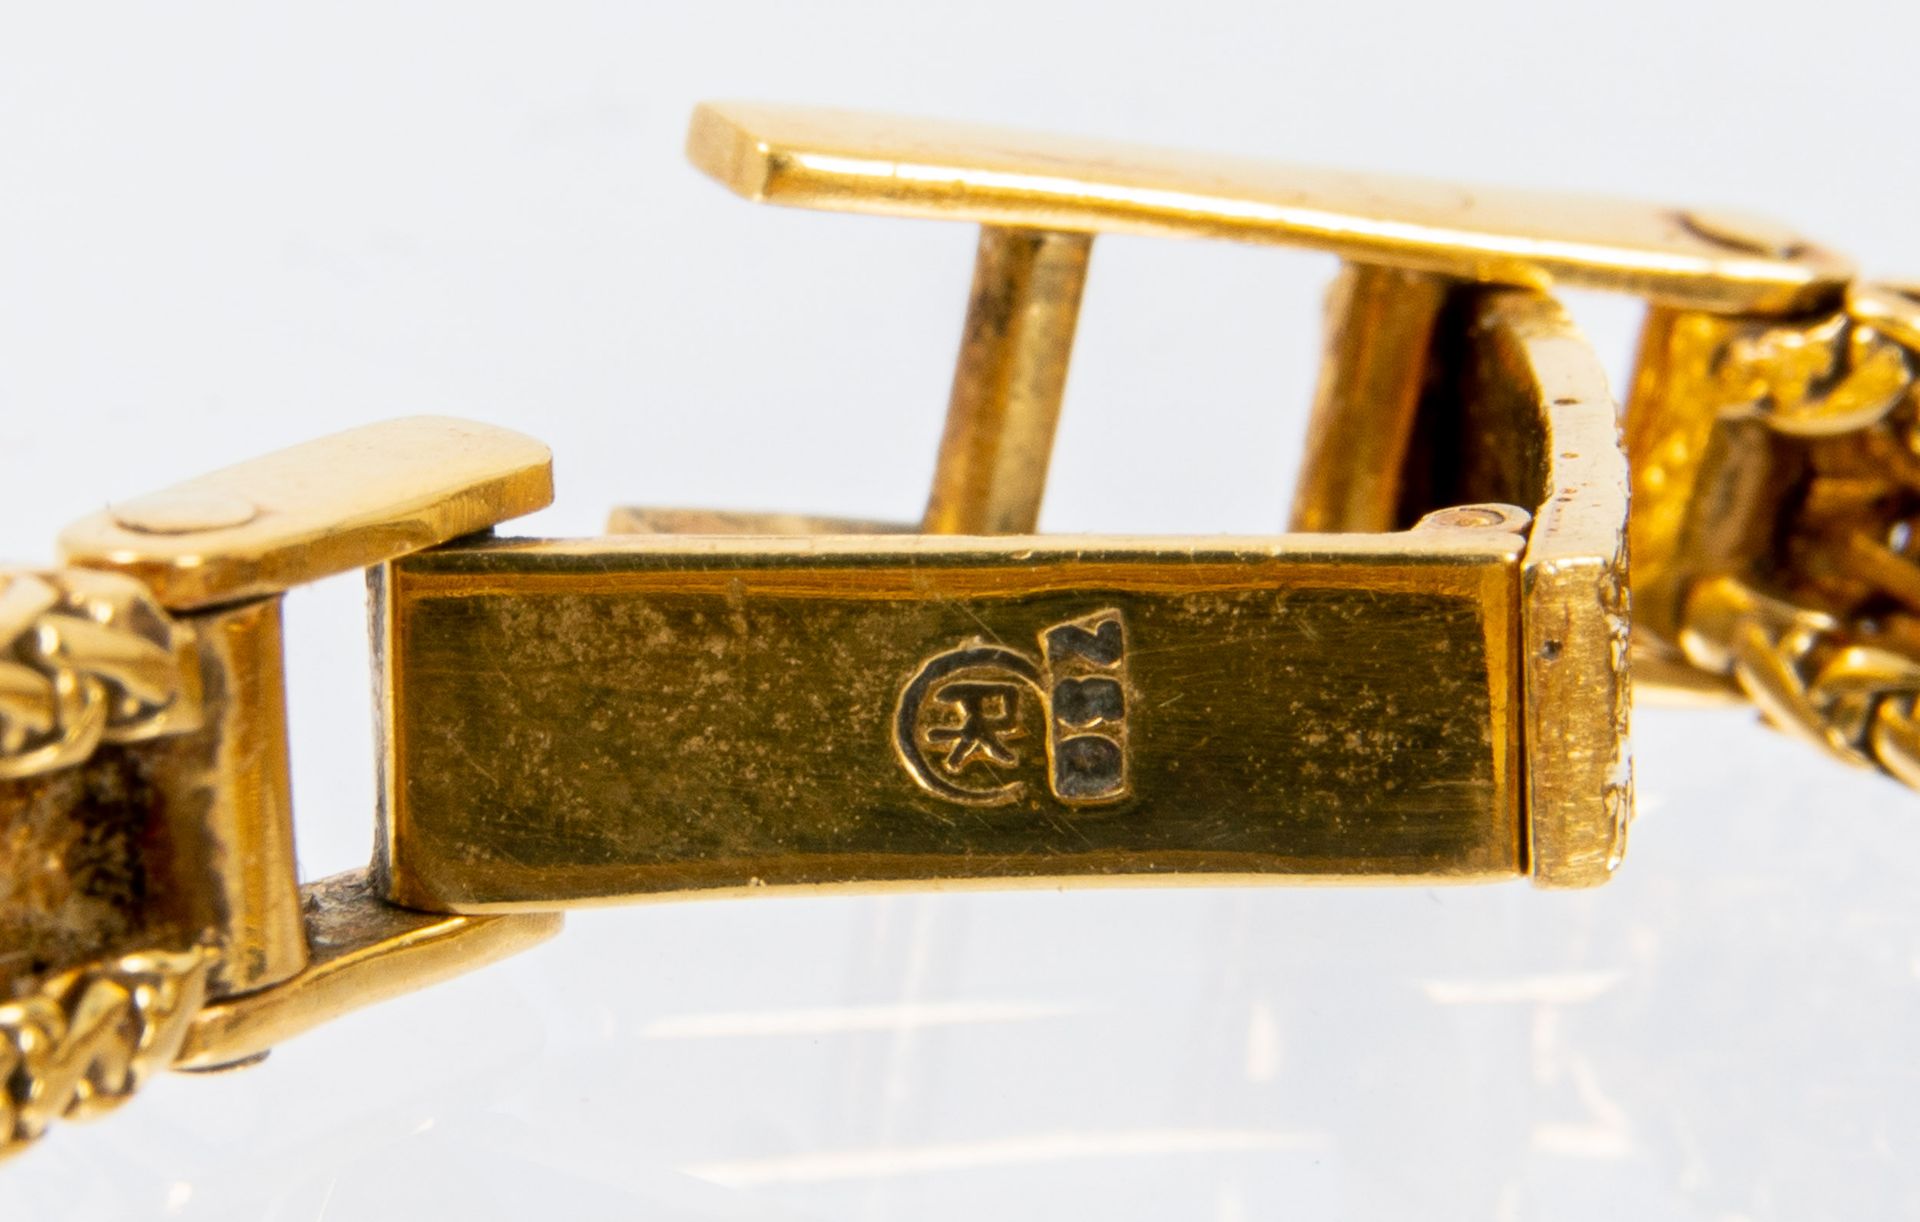 Klassische Damenarmbanduhr der Marke "KURZ-SWISS", Gehäuse und Armband in 750er Gelbgold, Werk läuf - Image 7 of 9